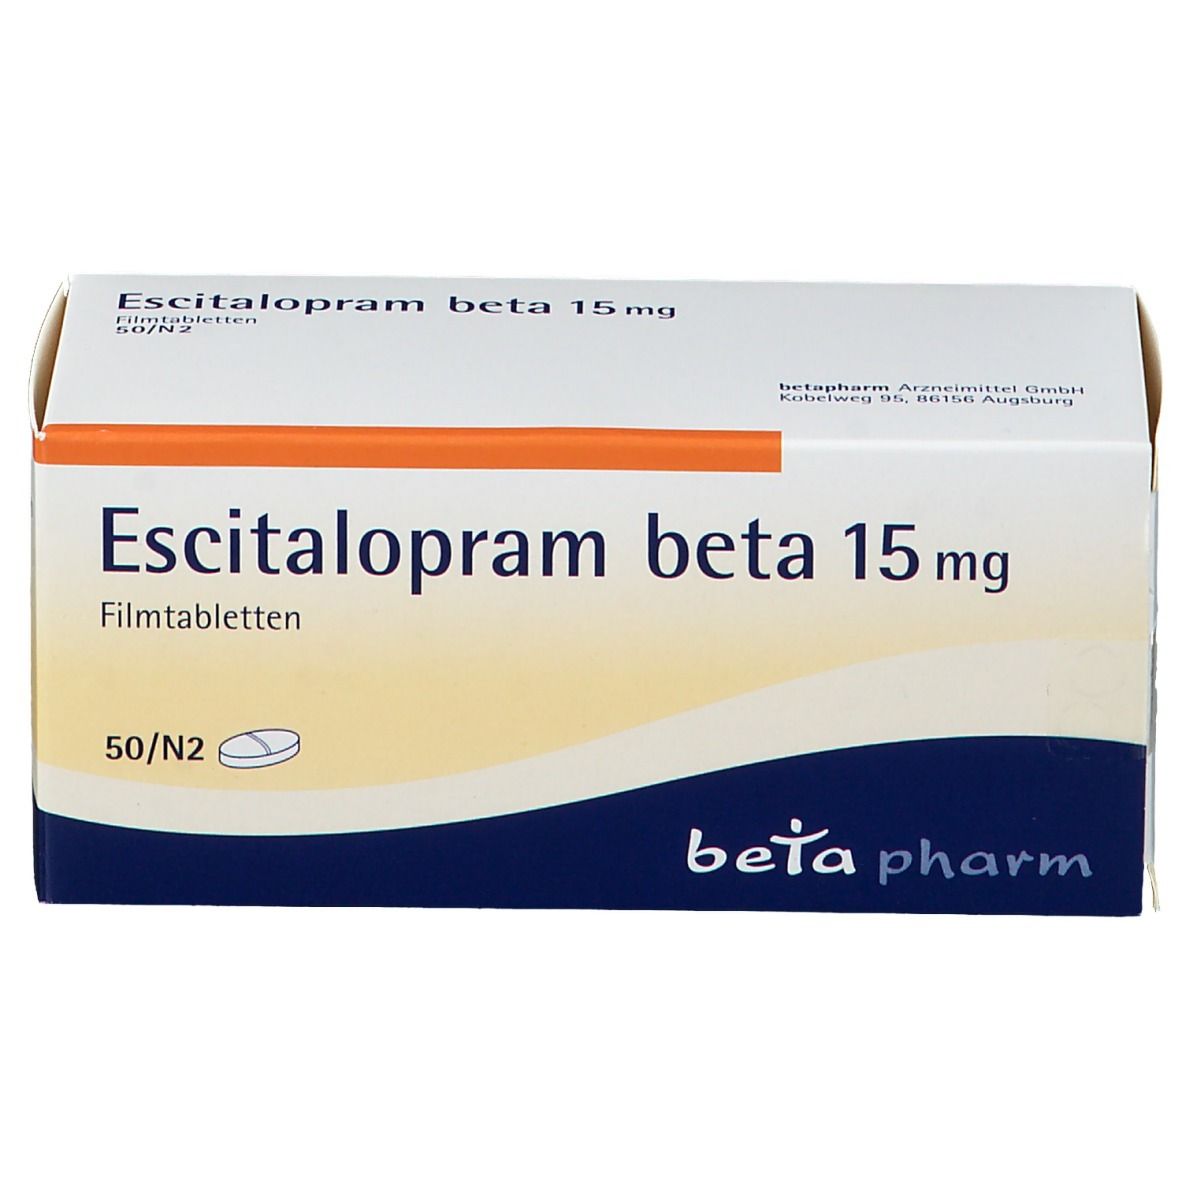 Escitalopram beta 15 mg